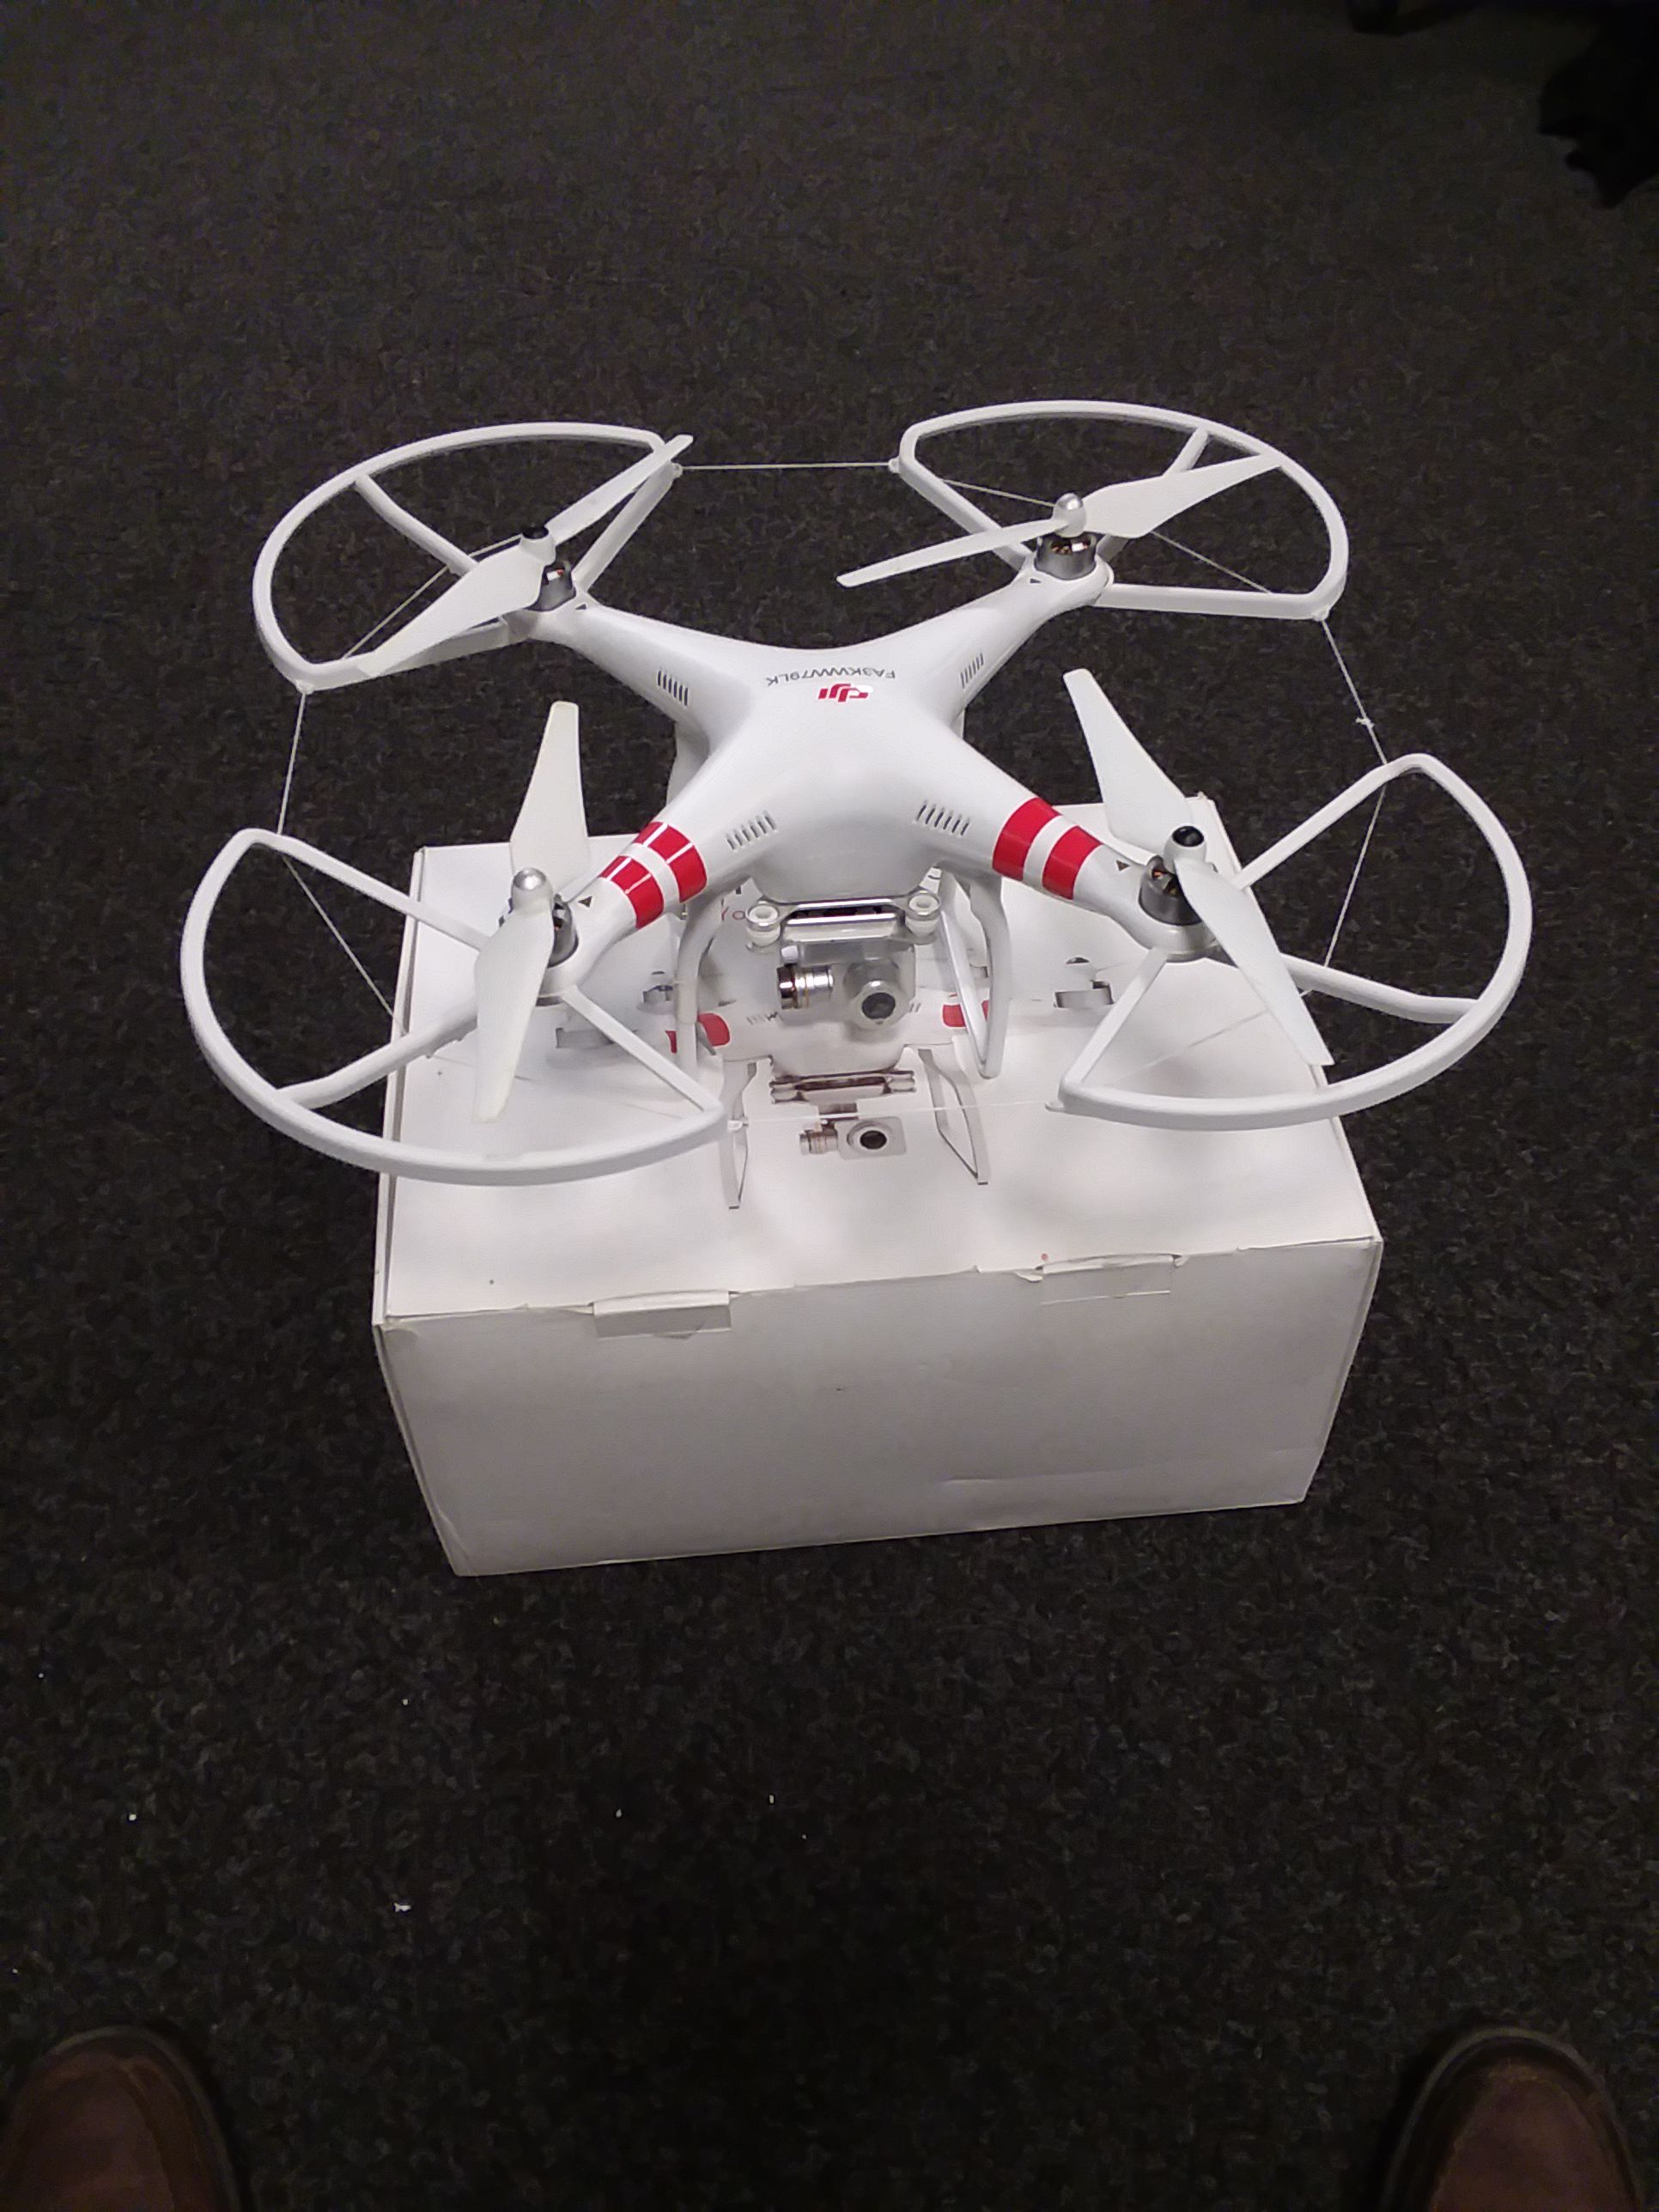 DJI Phantom 2 Vision + Quadcopter Drone